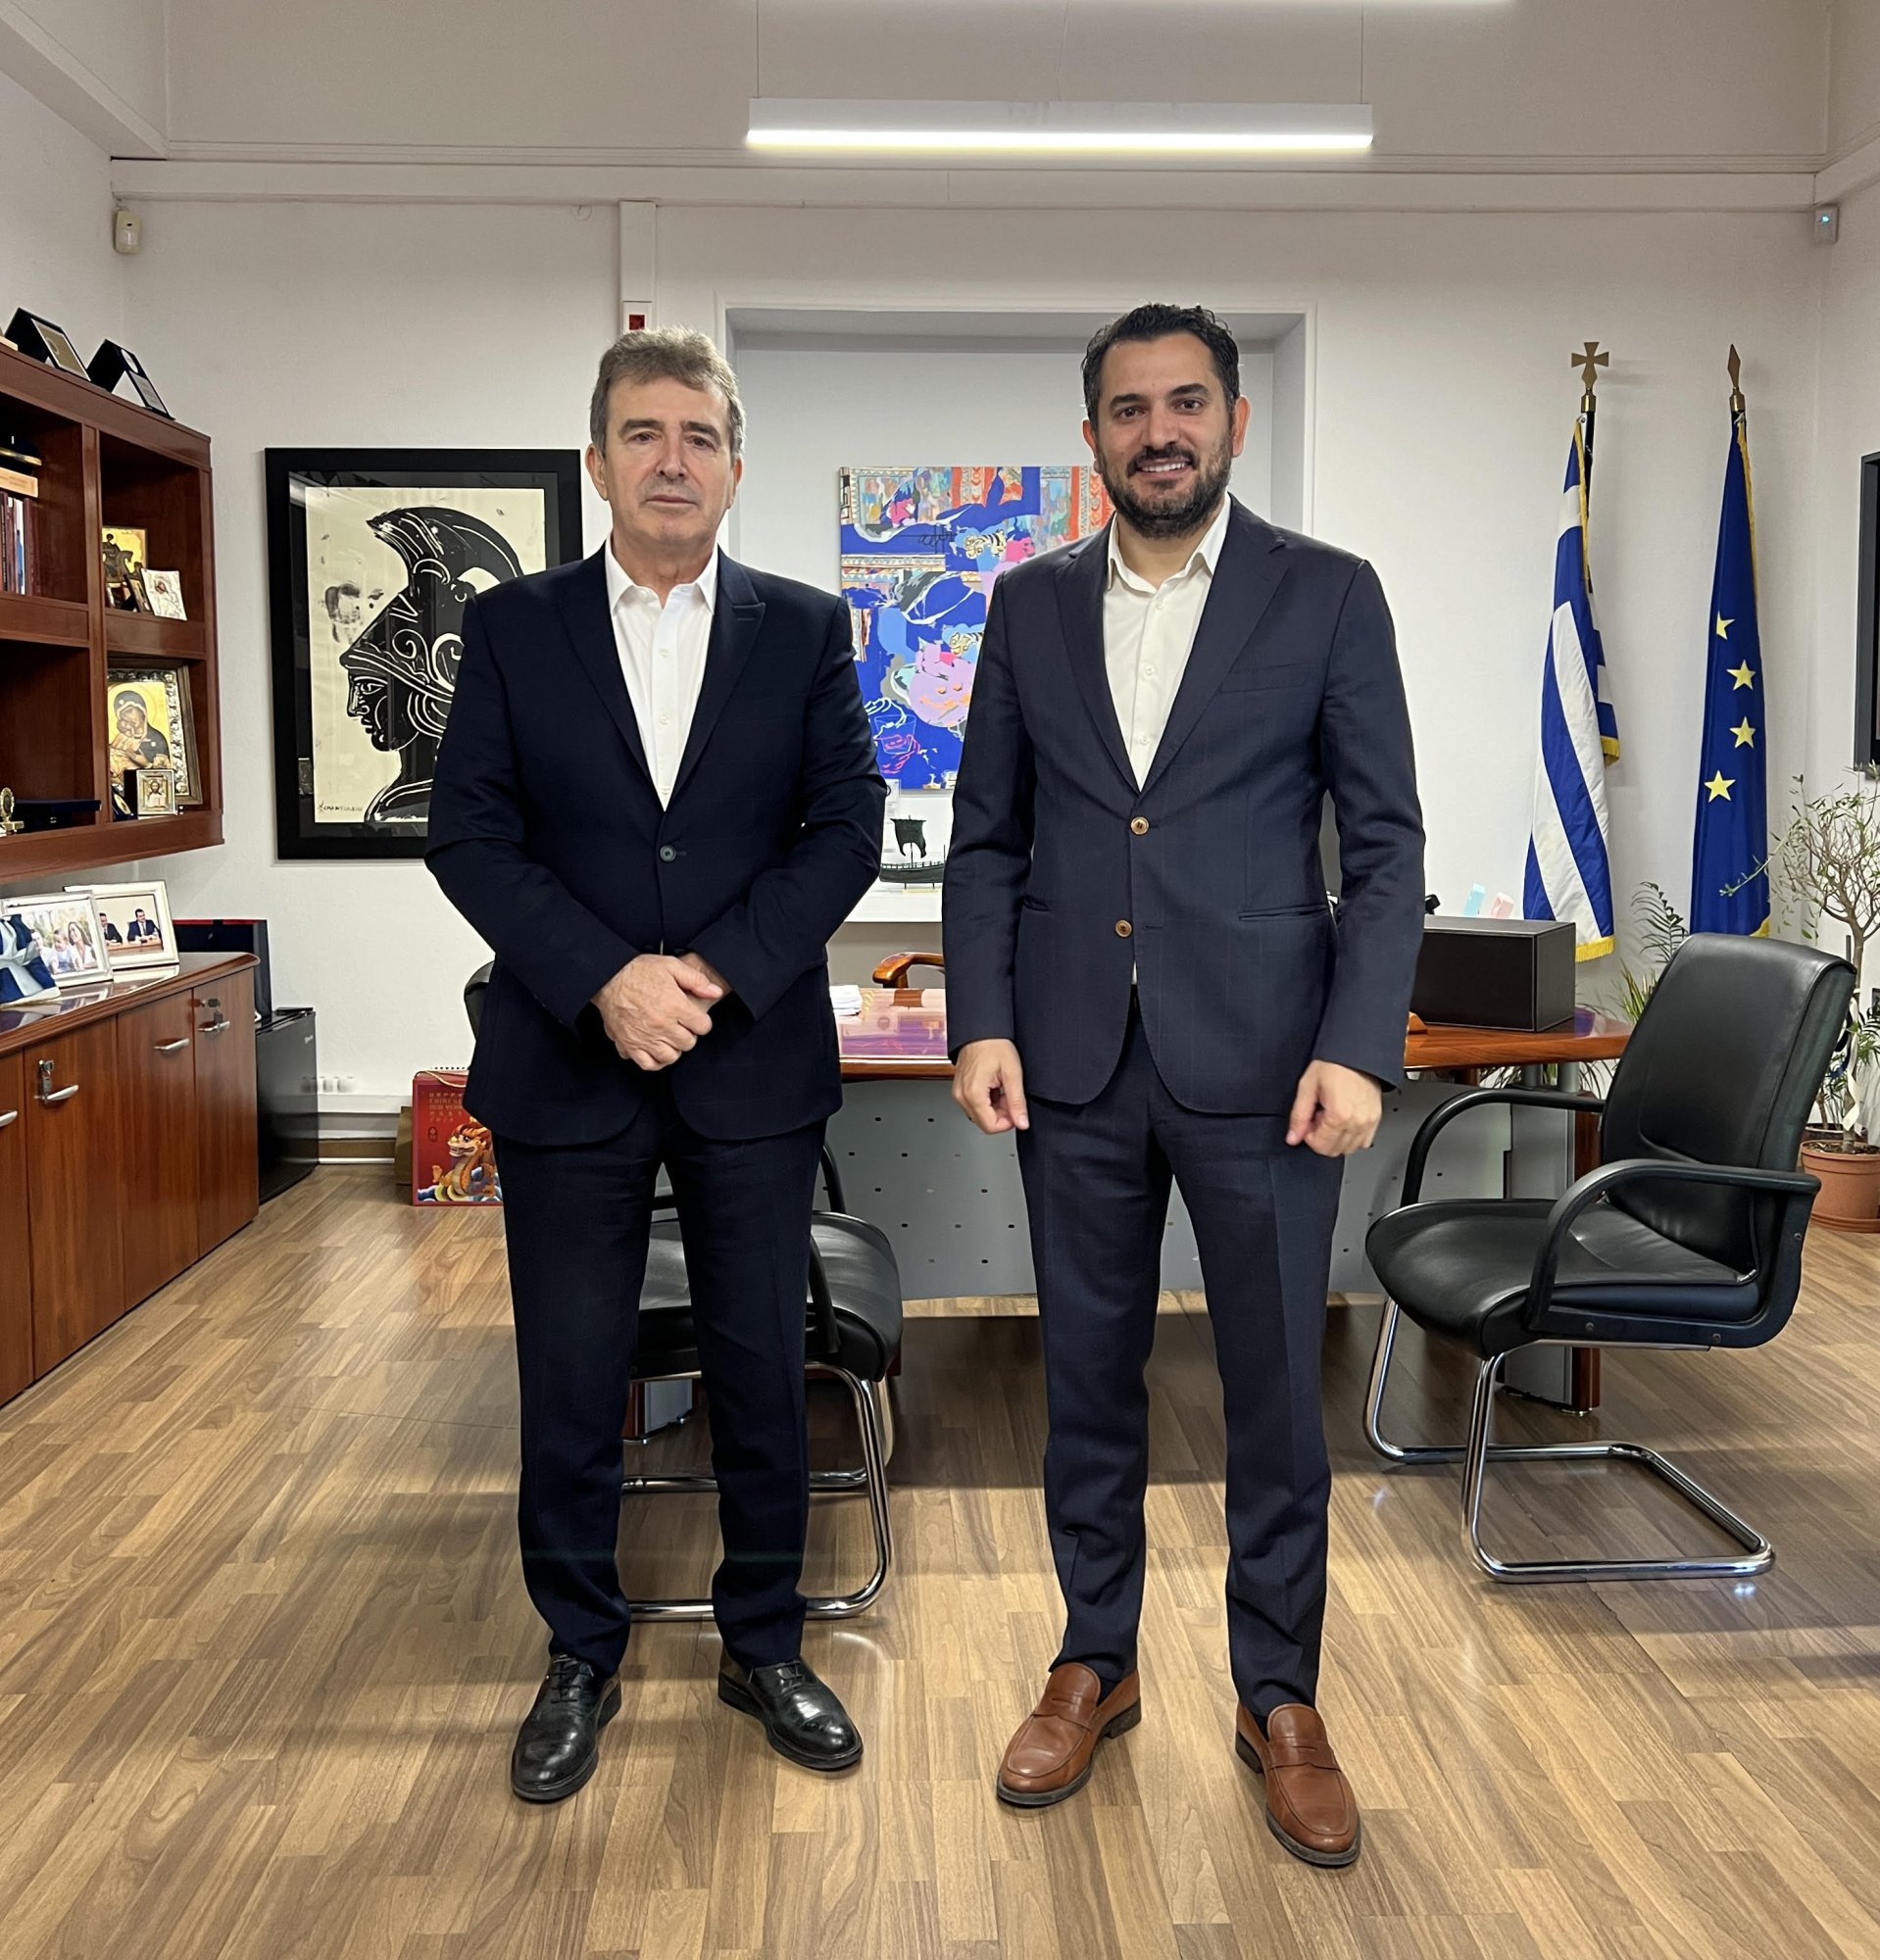 Ο υπουργός Προστασίας του Πολίτη Μιχάλης Χρυσοχοΐδης συναντήθηκε με τον Δήμαρχο Αγίων Αναργύρων - Καματερού